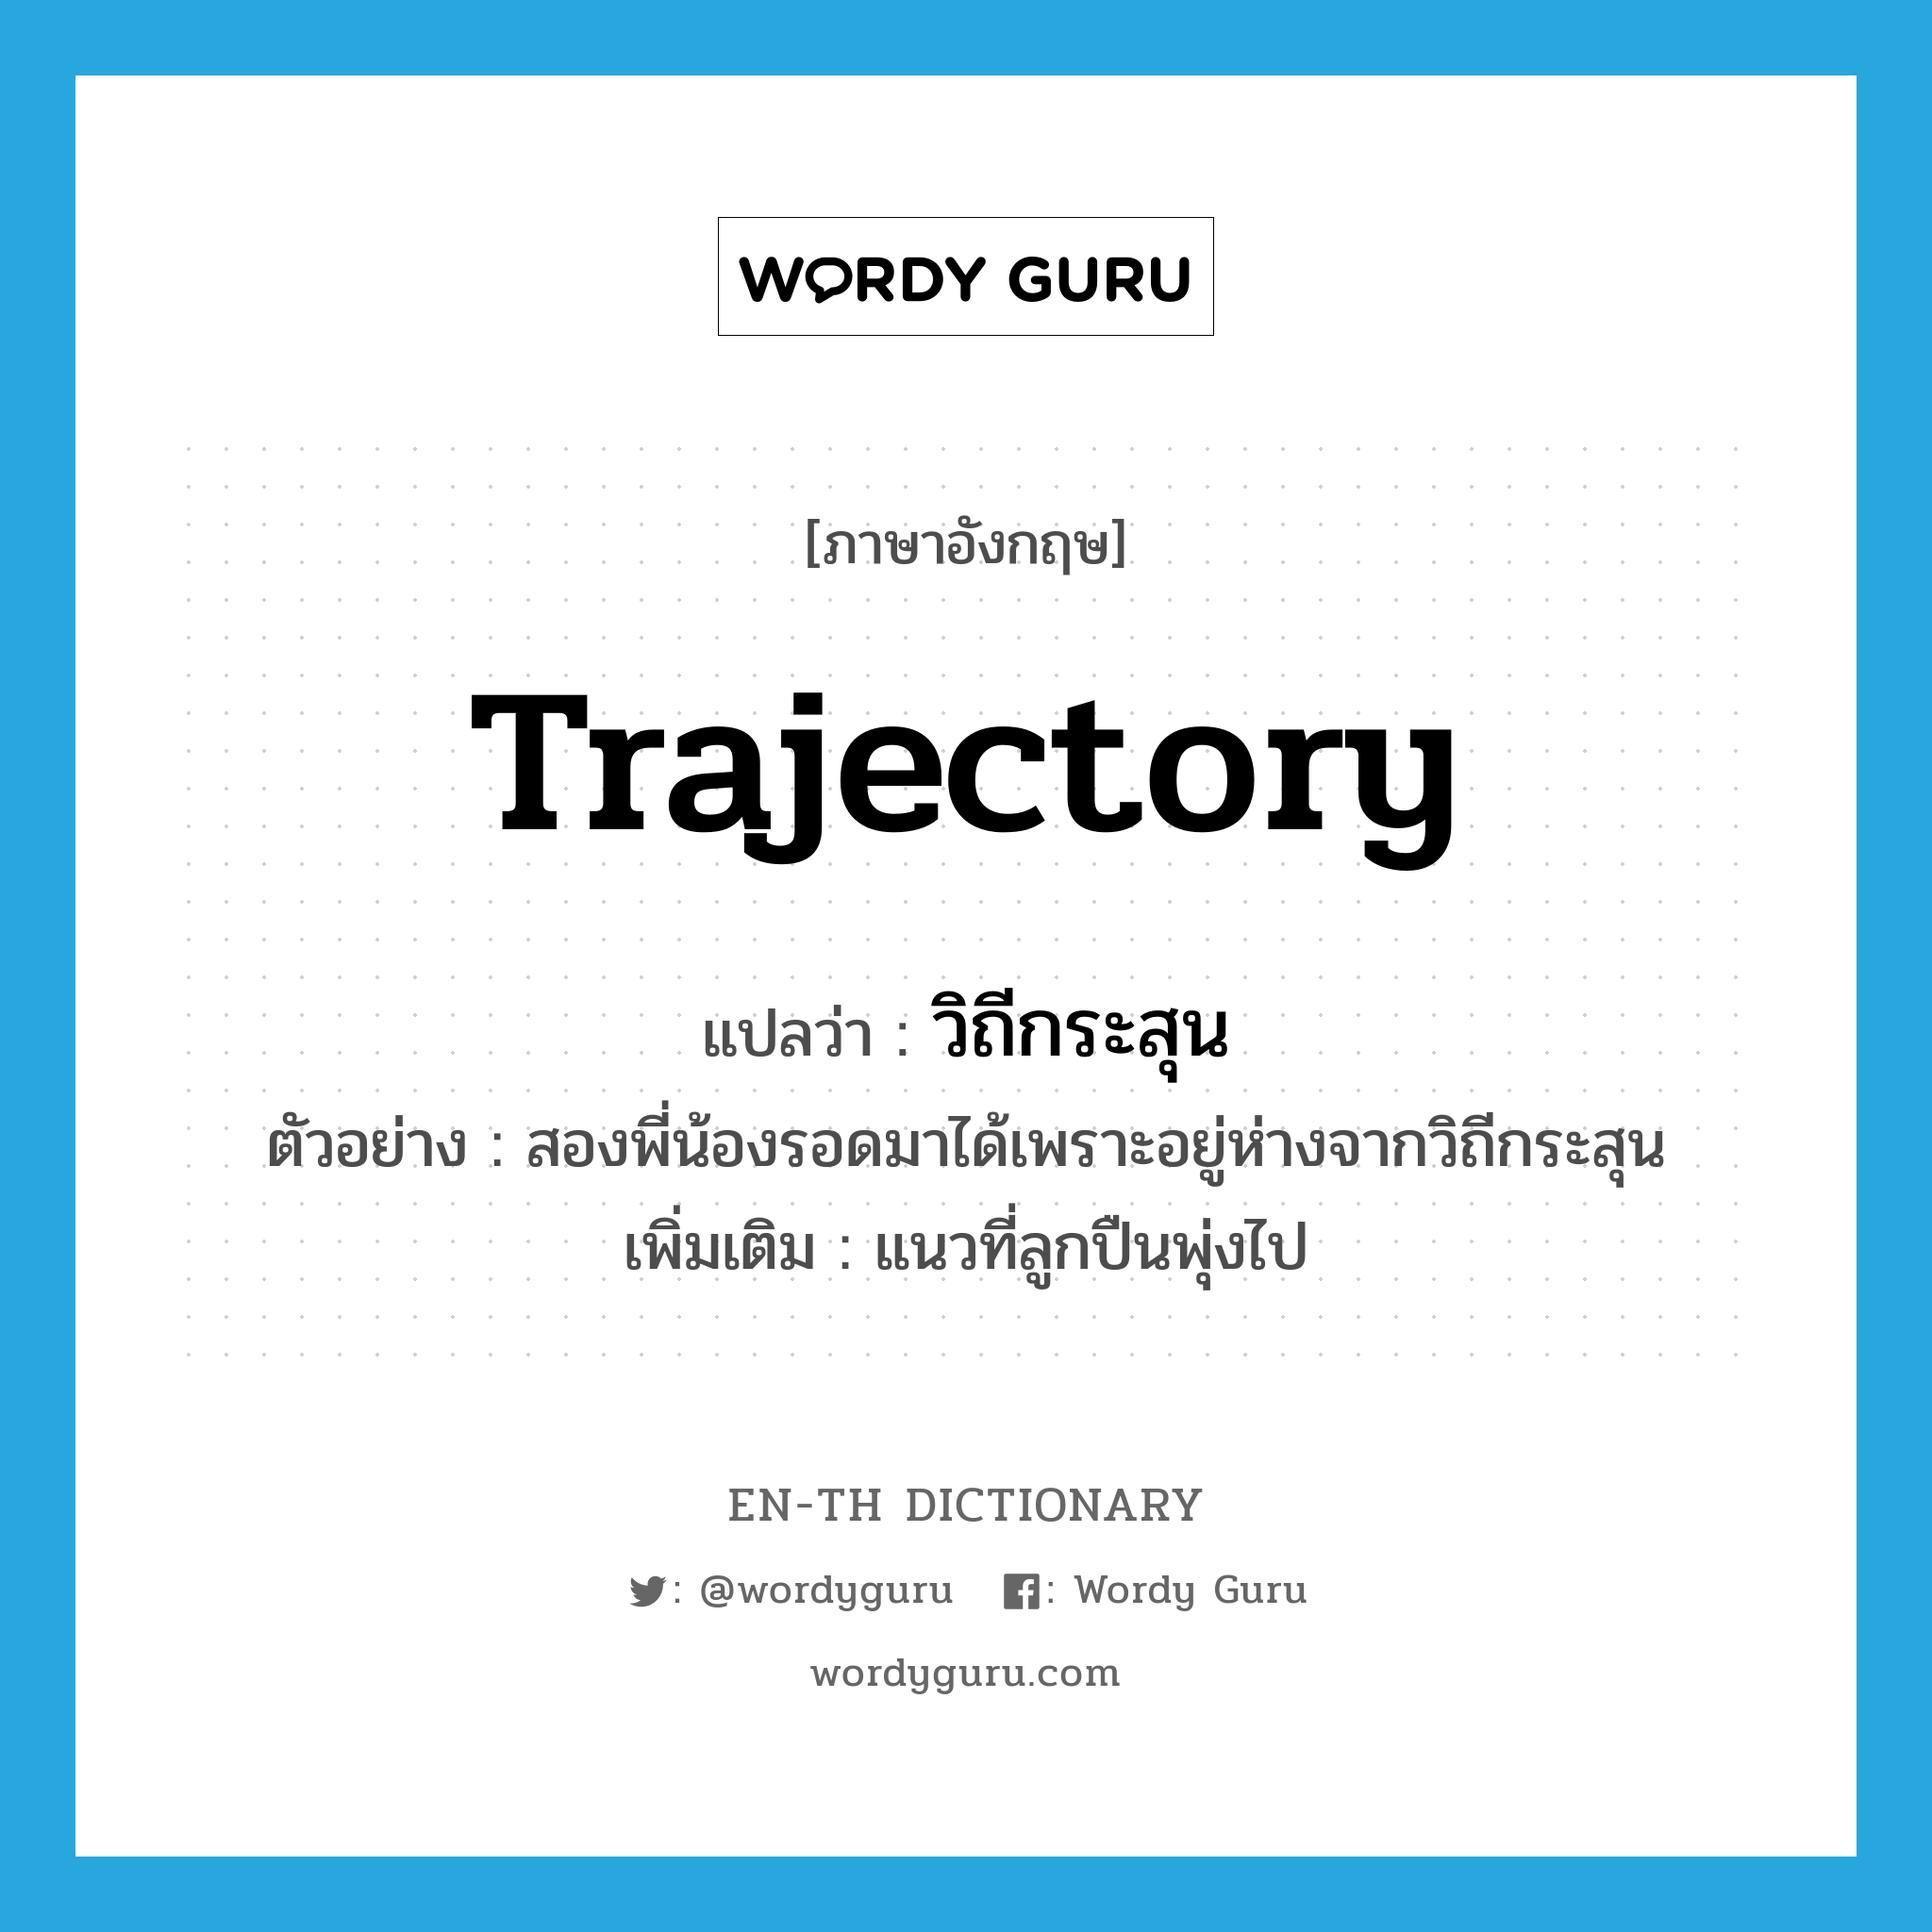 trajectory แปลว่า?, คำศัพท์ภาษาอังกฤษ trajectory แปลว่า วิถีกระสุน ประเภท N ตัวอย่าง สองพี่น้องรอดมาได้เพราะอยู่ห่างจากวิถีกระสุน เพิ่มเติม แนวที่ลูกปืนพุ่งไป หมวด N